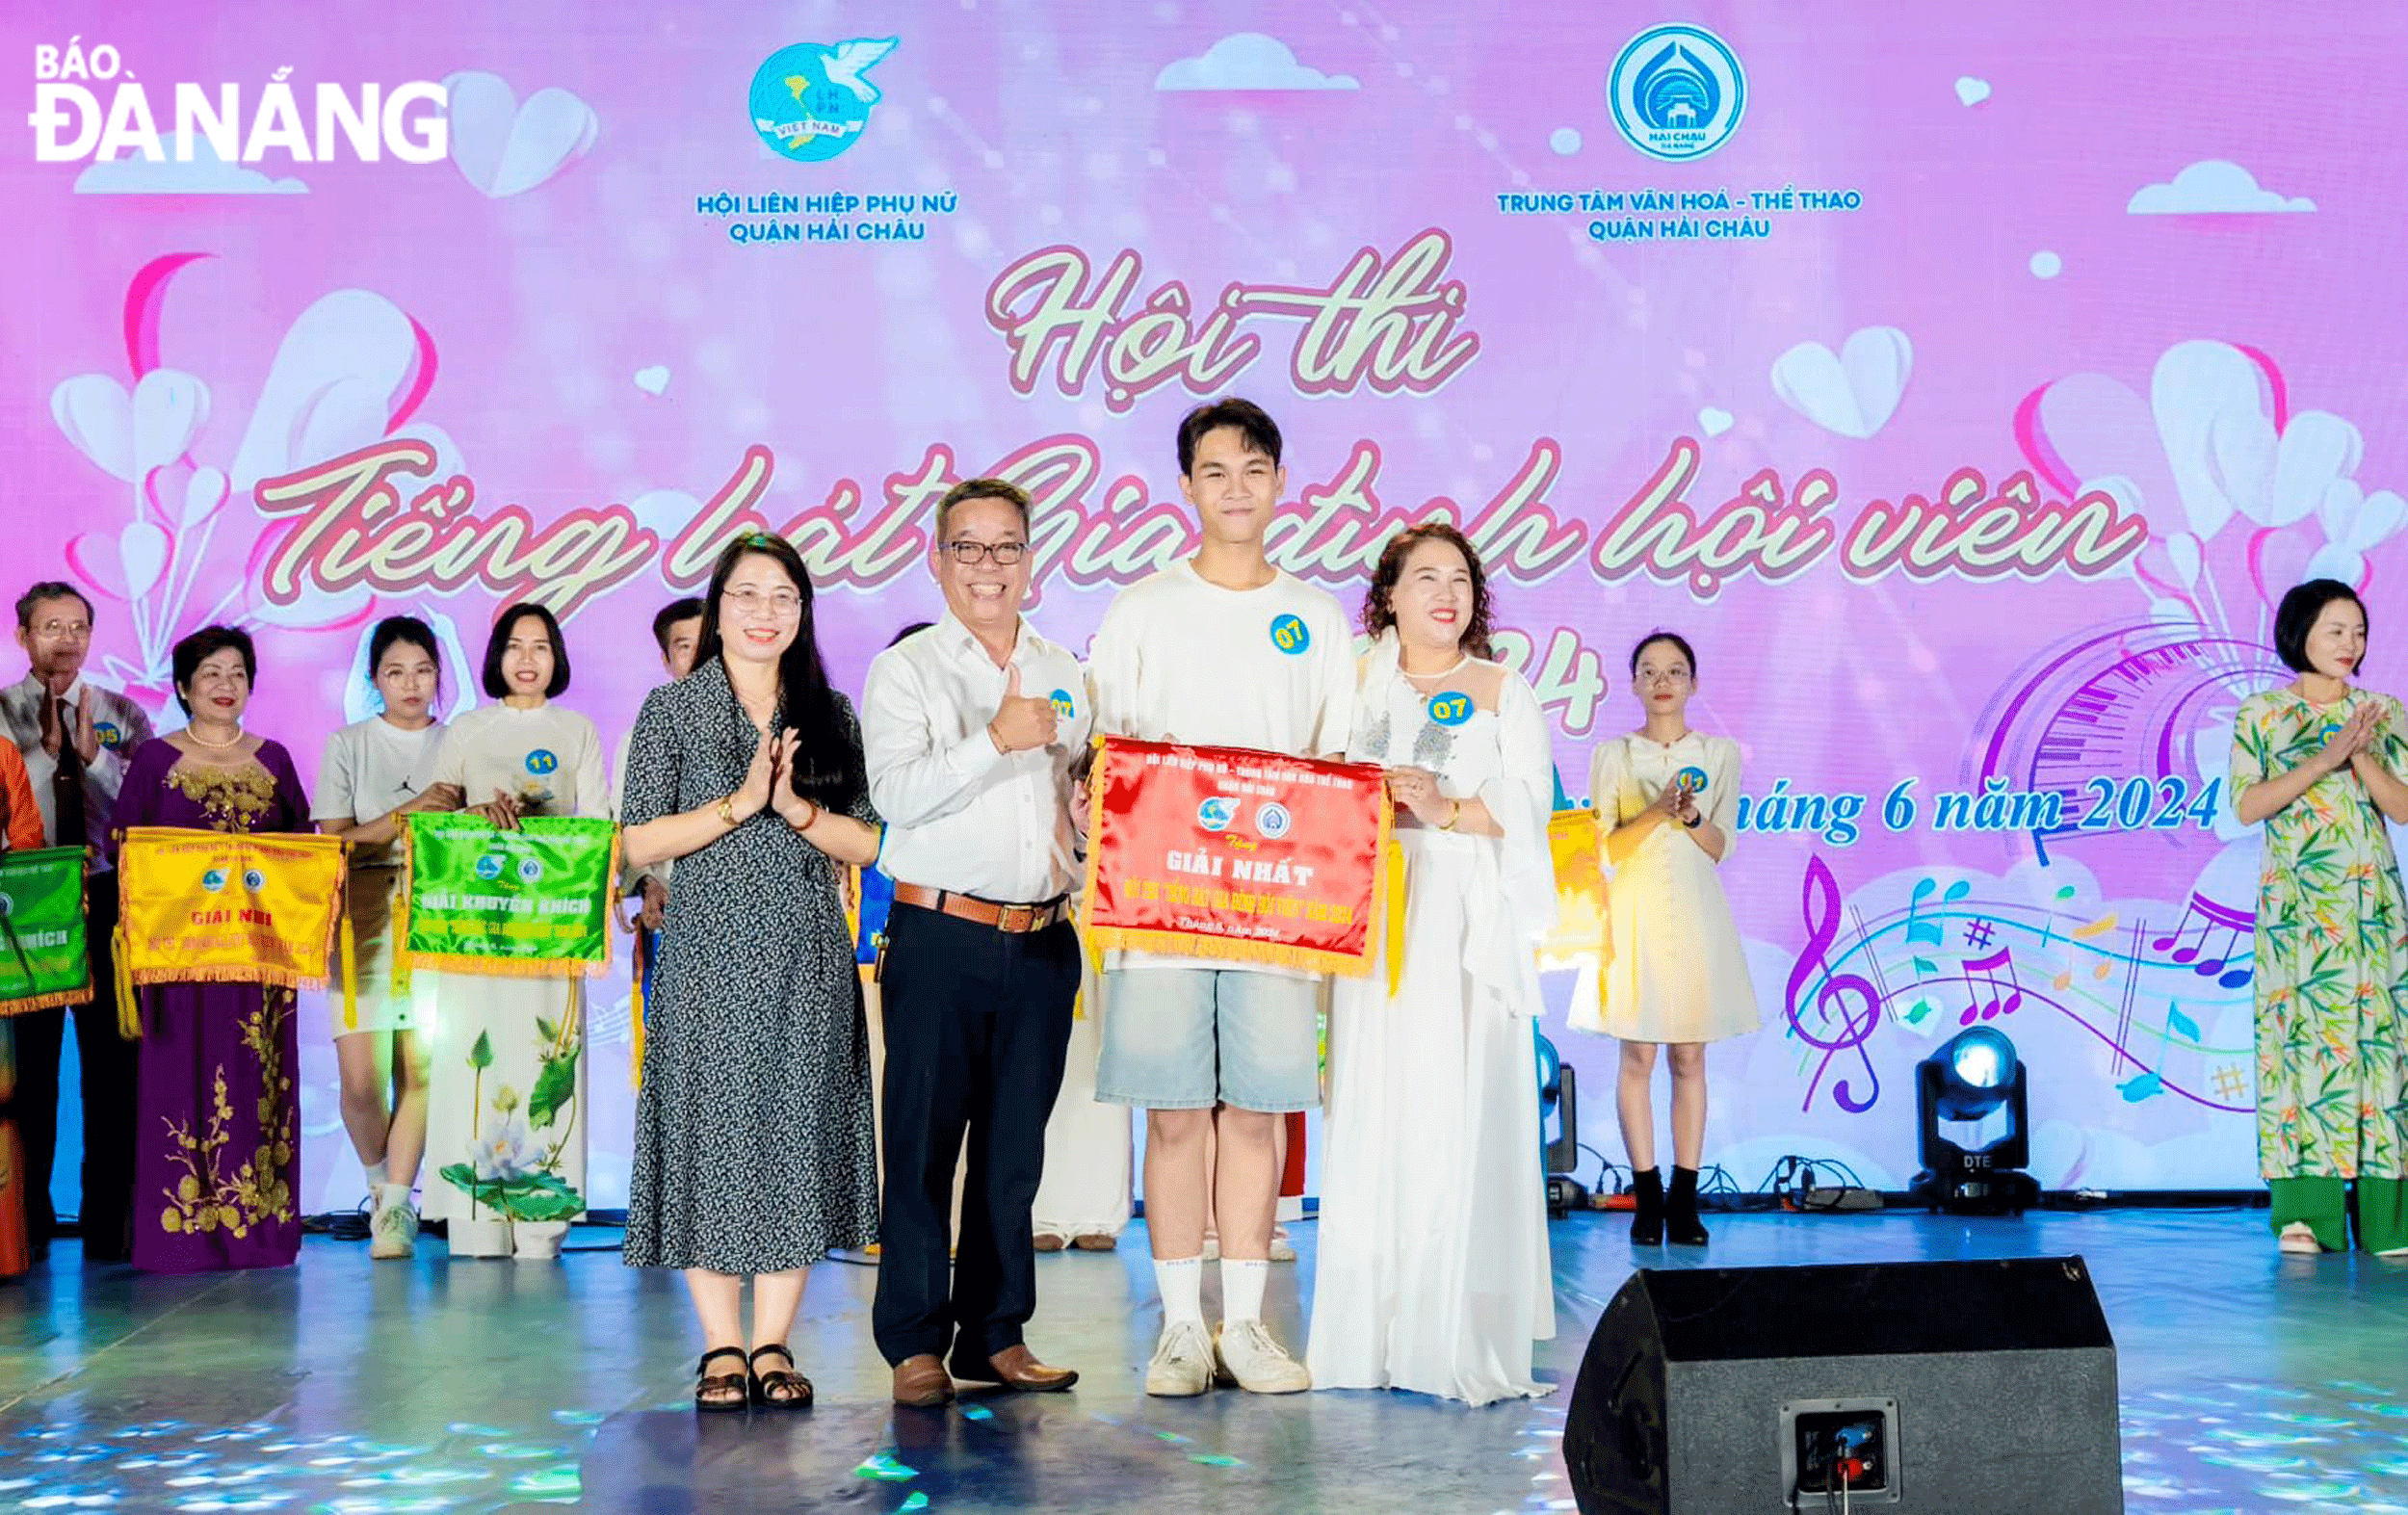 Phó Chủ tịch Hội Liên hiệp Phụ nữ thành phố Lương Thị Đạo (bên trái, hàng đầu) trao giải Nhất cho gia đình xuất sắc trong hội thi “Tiếng hát gia đình hội viên” năm 2024. Ảnh: X.D